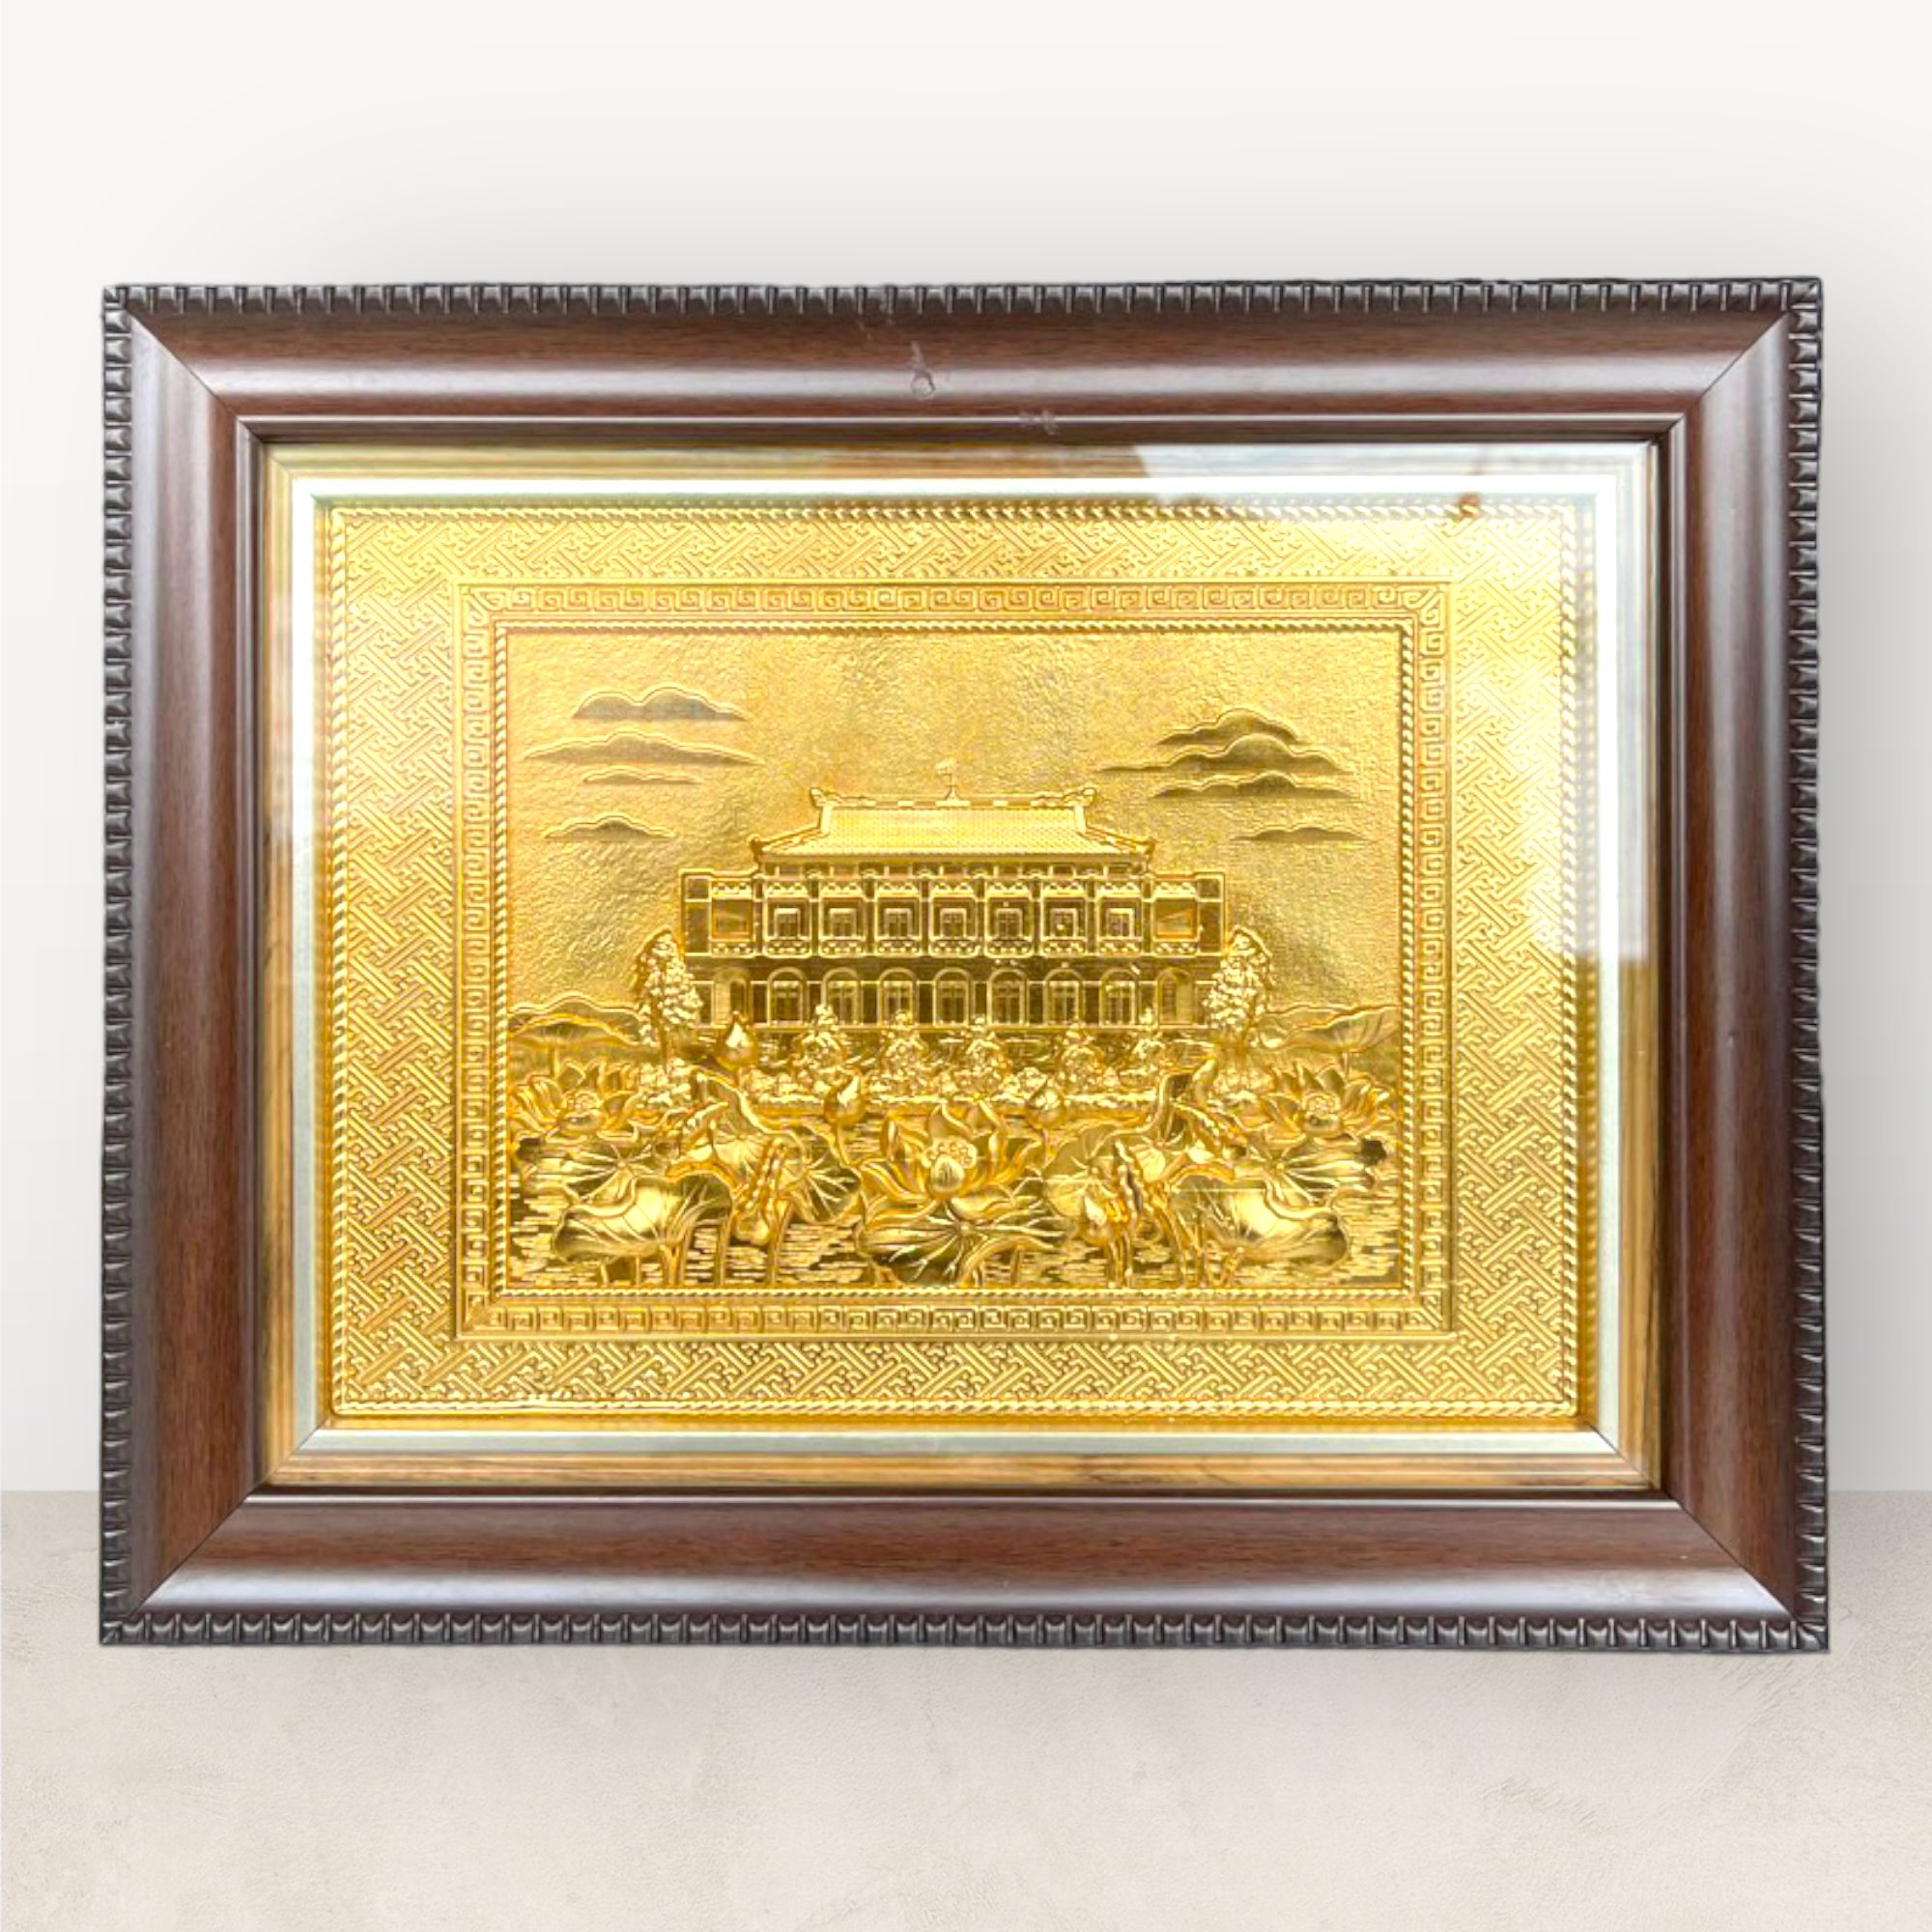  Tranh Bến Cảng Nhà Rồng - Bảo Tàng Hồ Chí Minh đồng vàng mạ vàng 24K 28x34cm mẫu 1 